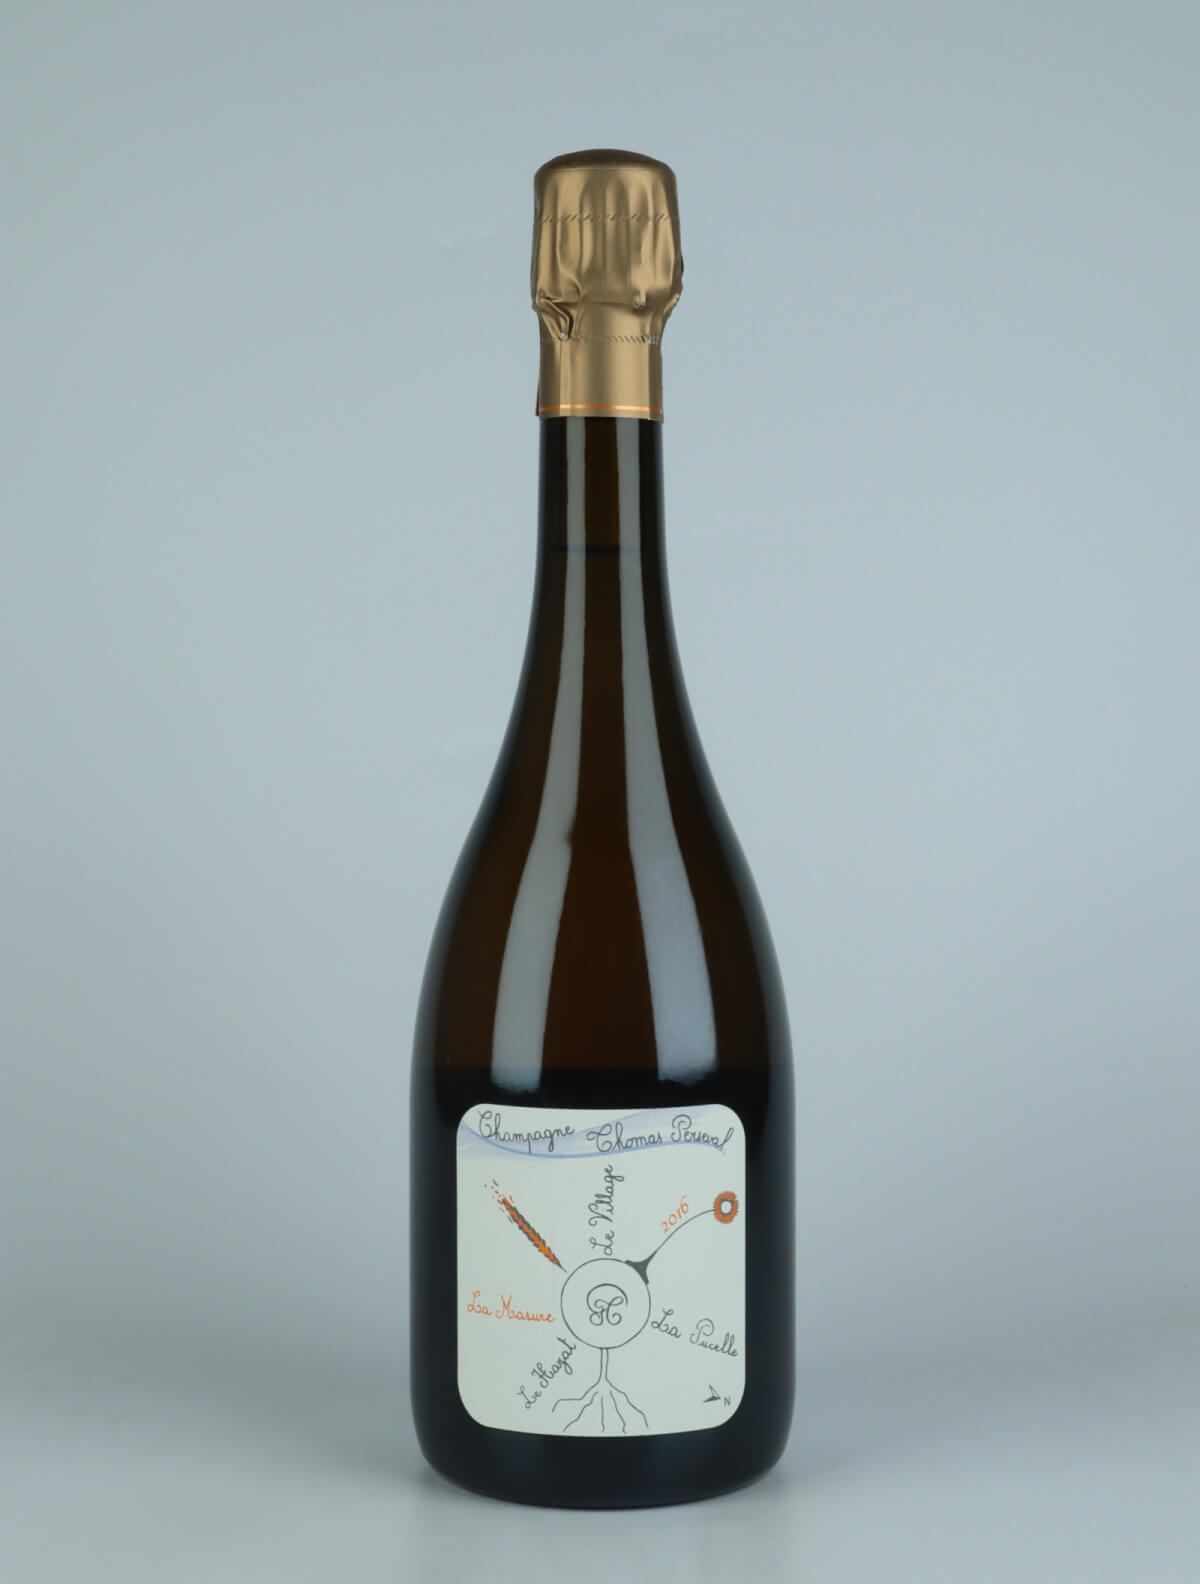 En flaske 2016 Chamery 1. Cru - La Masure Mousserende fra Thomas Perseval, Champagne i Frankrig